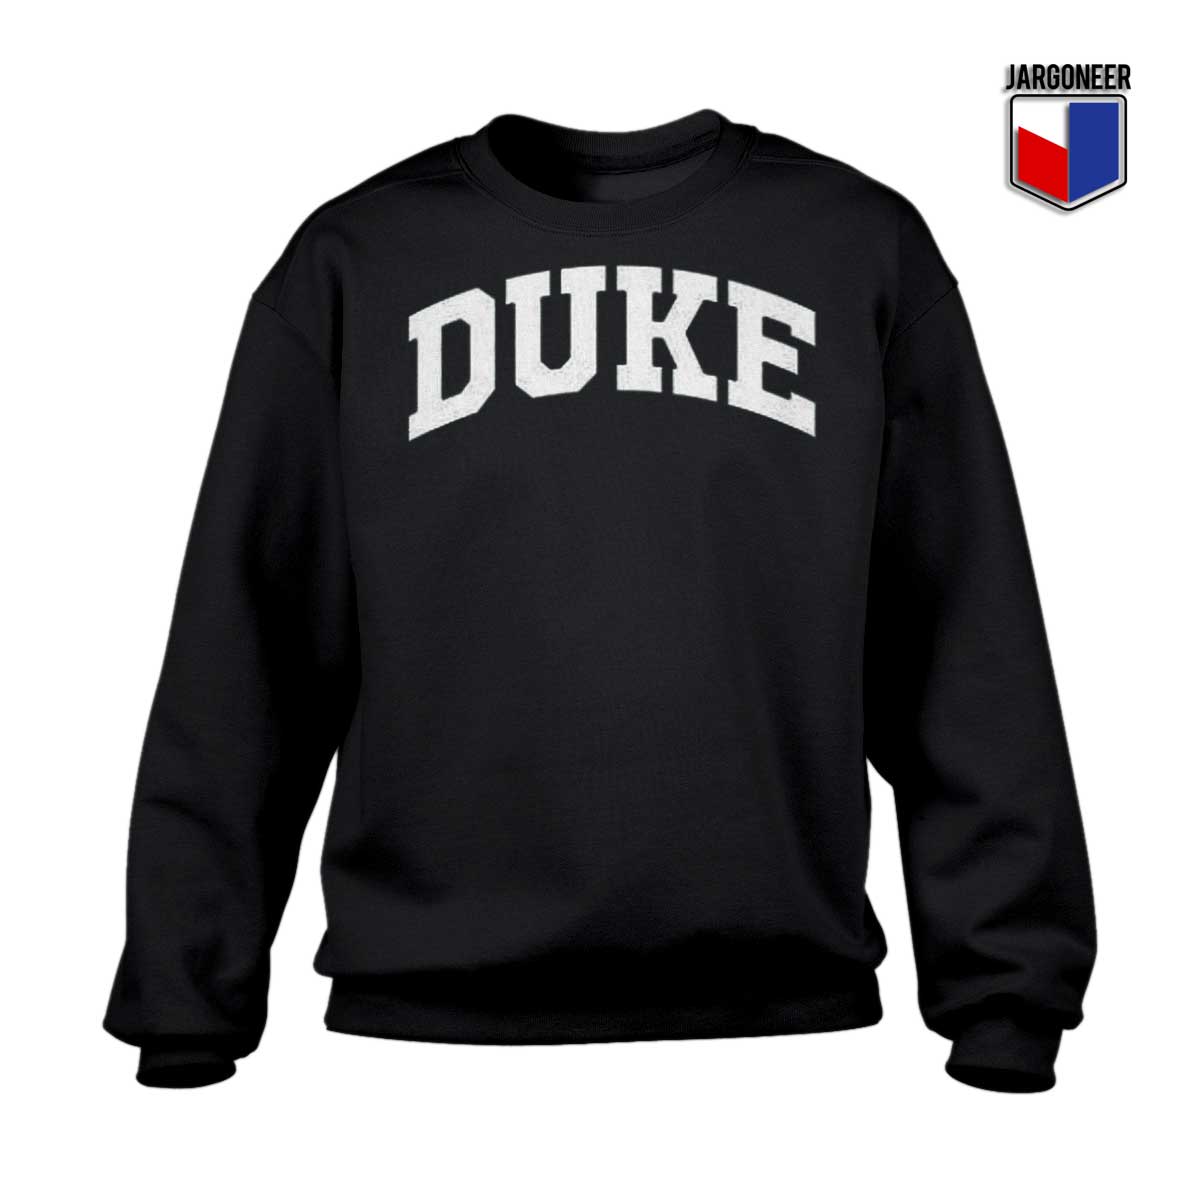 Duke University Sweatshirt - Shop Unique Graphic Cool Shirt Designs